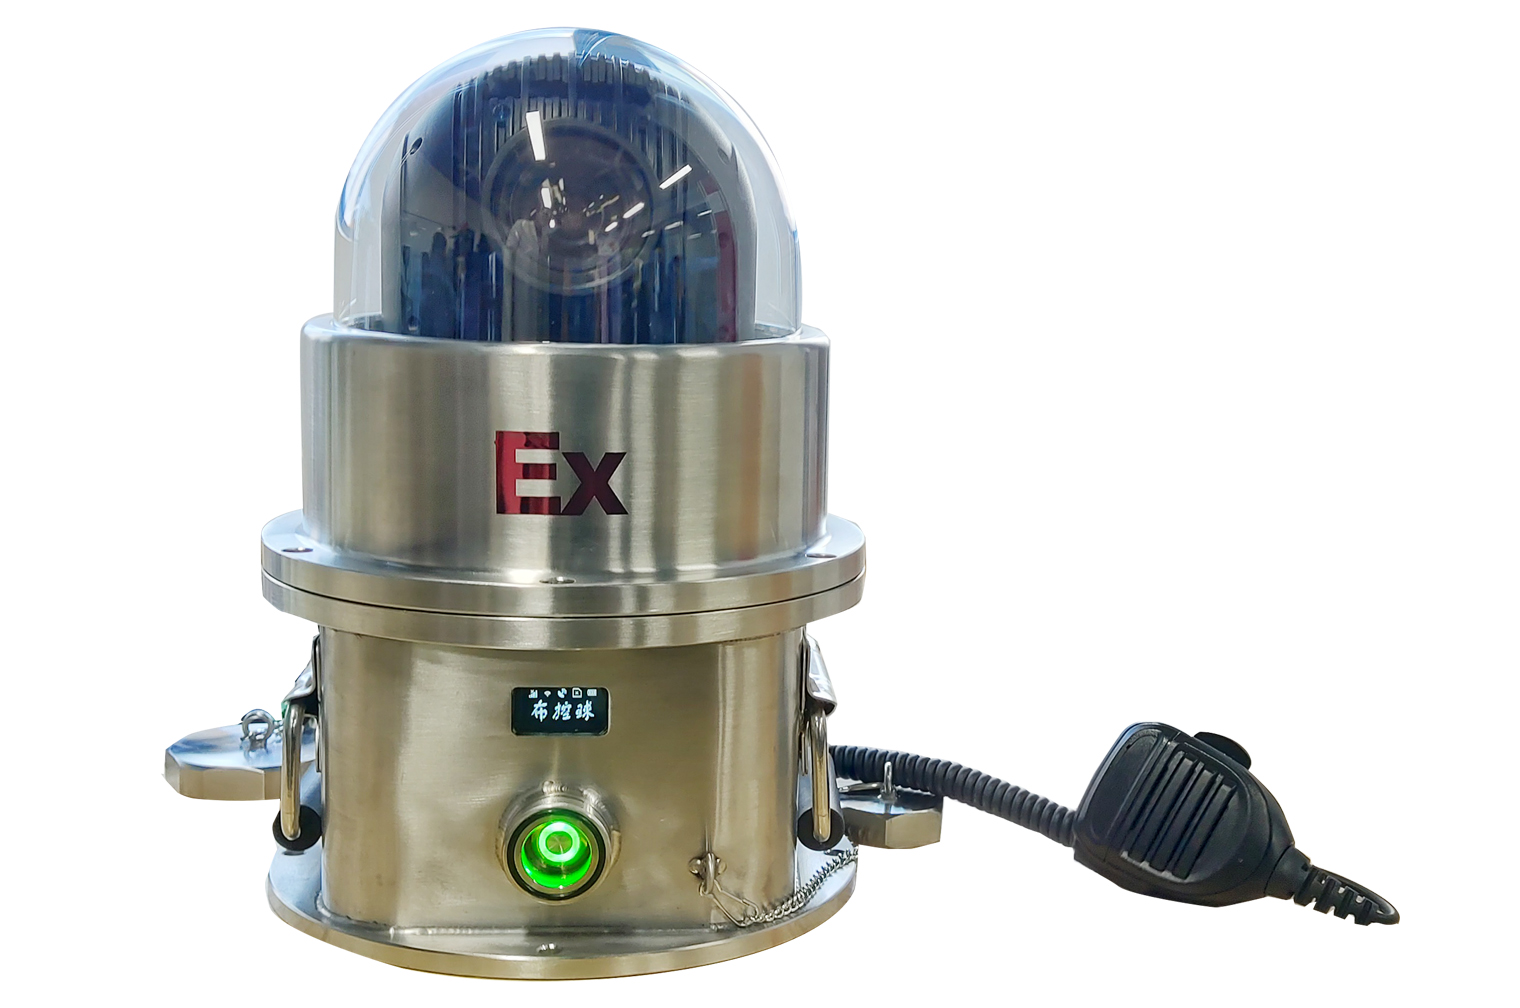 M130-EX防爆布控球，修井作业视频监控布控球，防爆云台摄像机，防爆摄像机